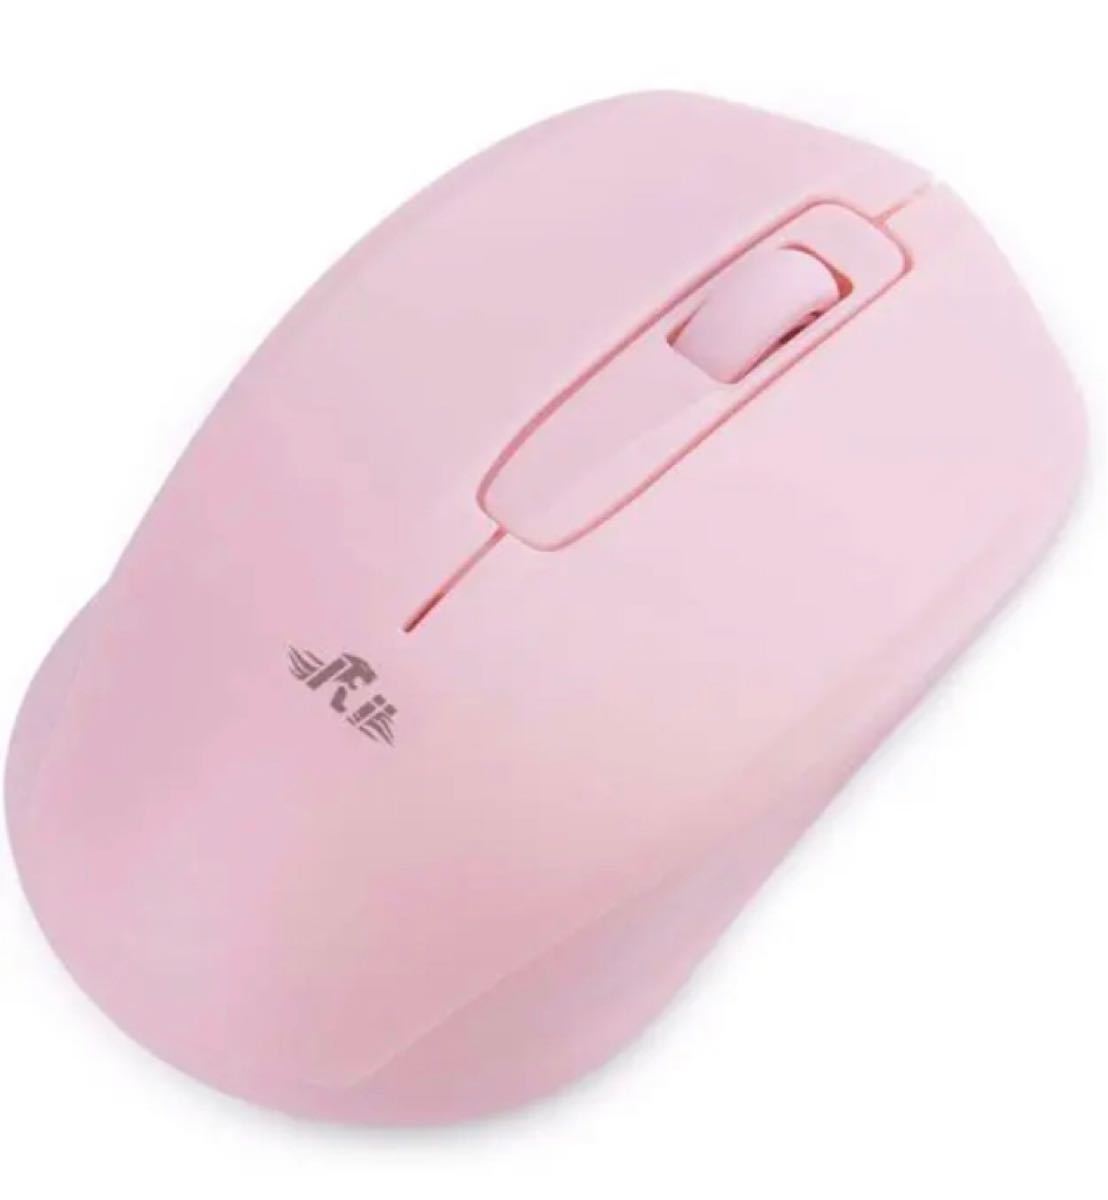 マウスワイヤレス 小型 無線マウス 電池式 2.4GHz 1000DPI 付属ワイヤレスマウス USBレシーバ PC用マウス 仕事